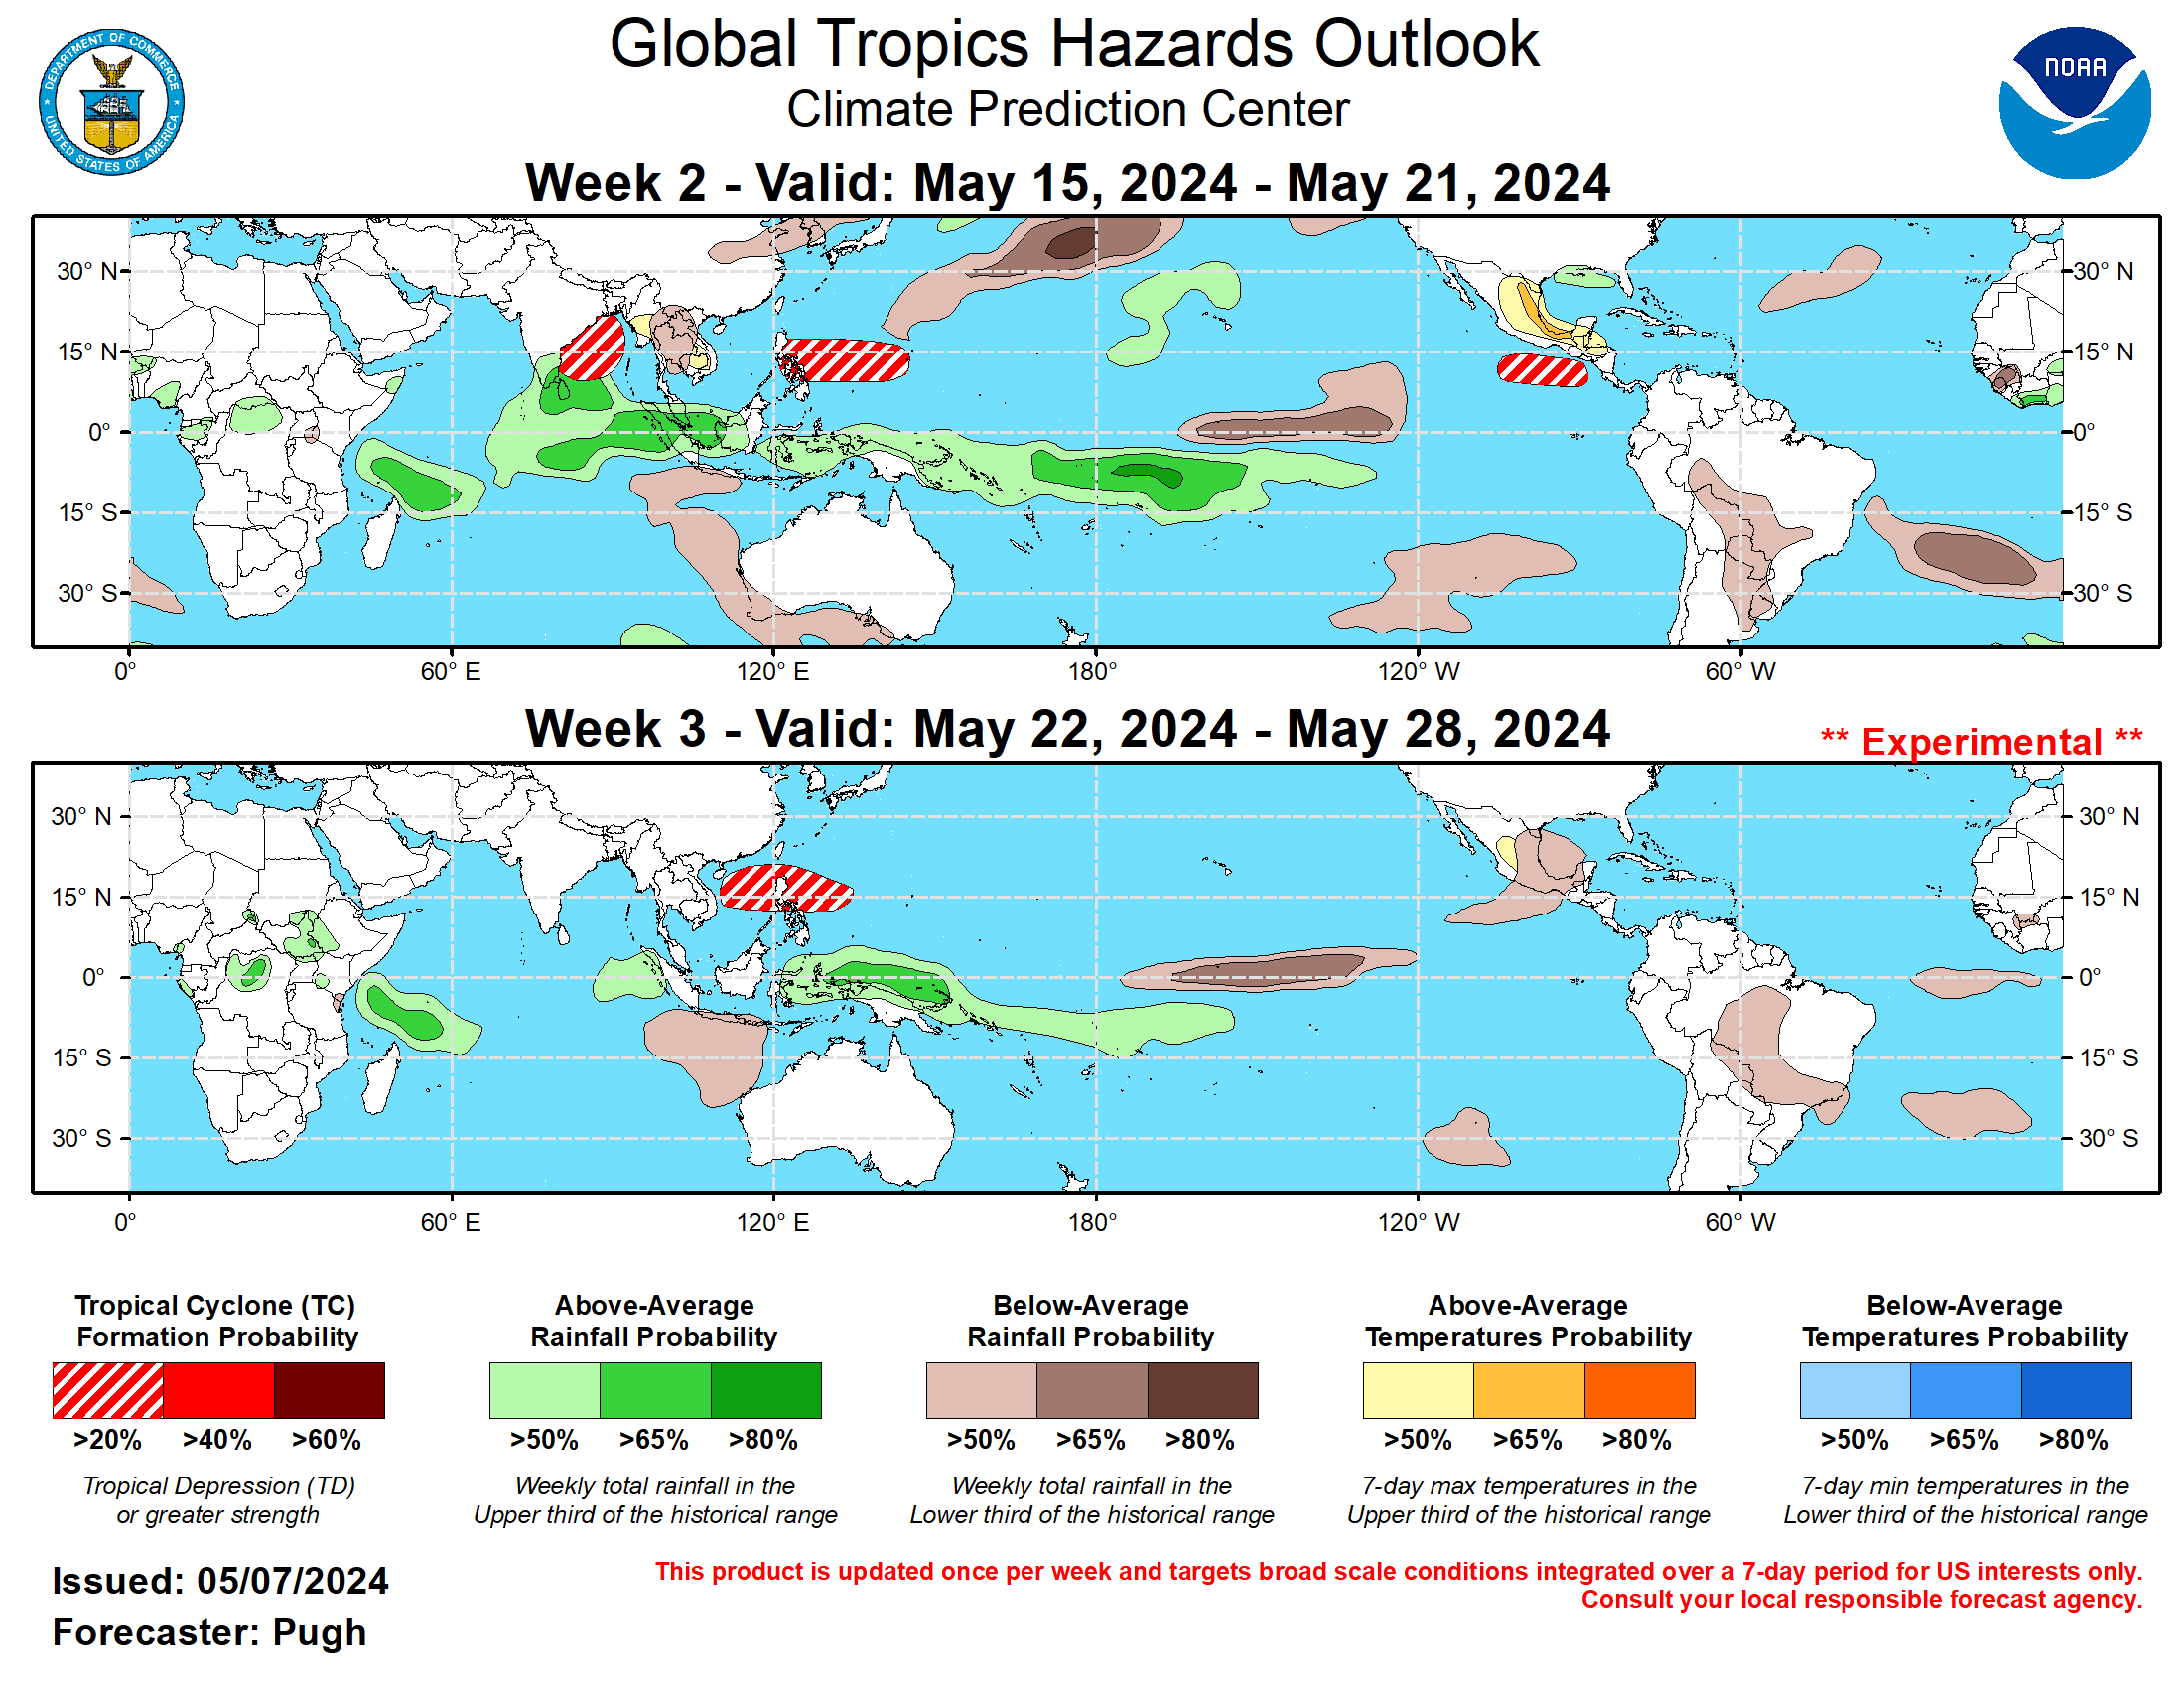 NOAA Global Tropics Hazards Outlook